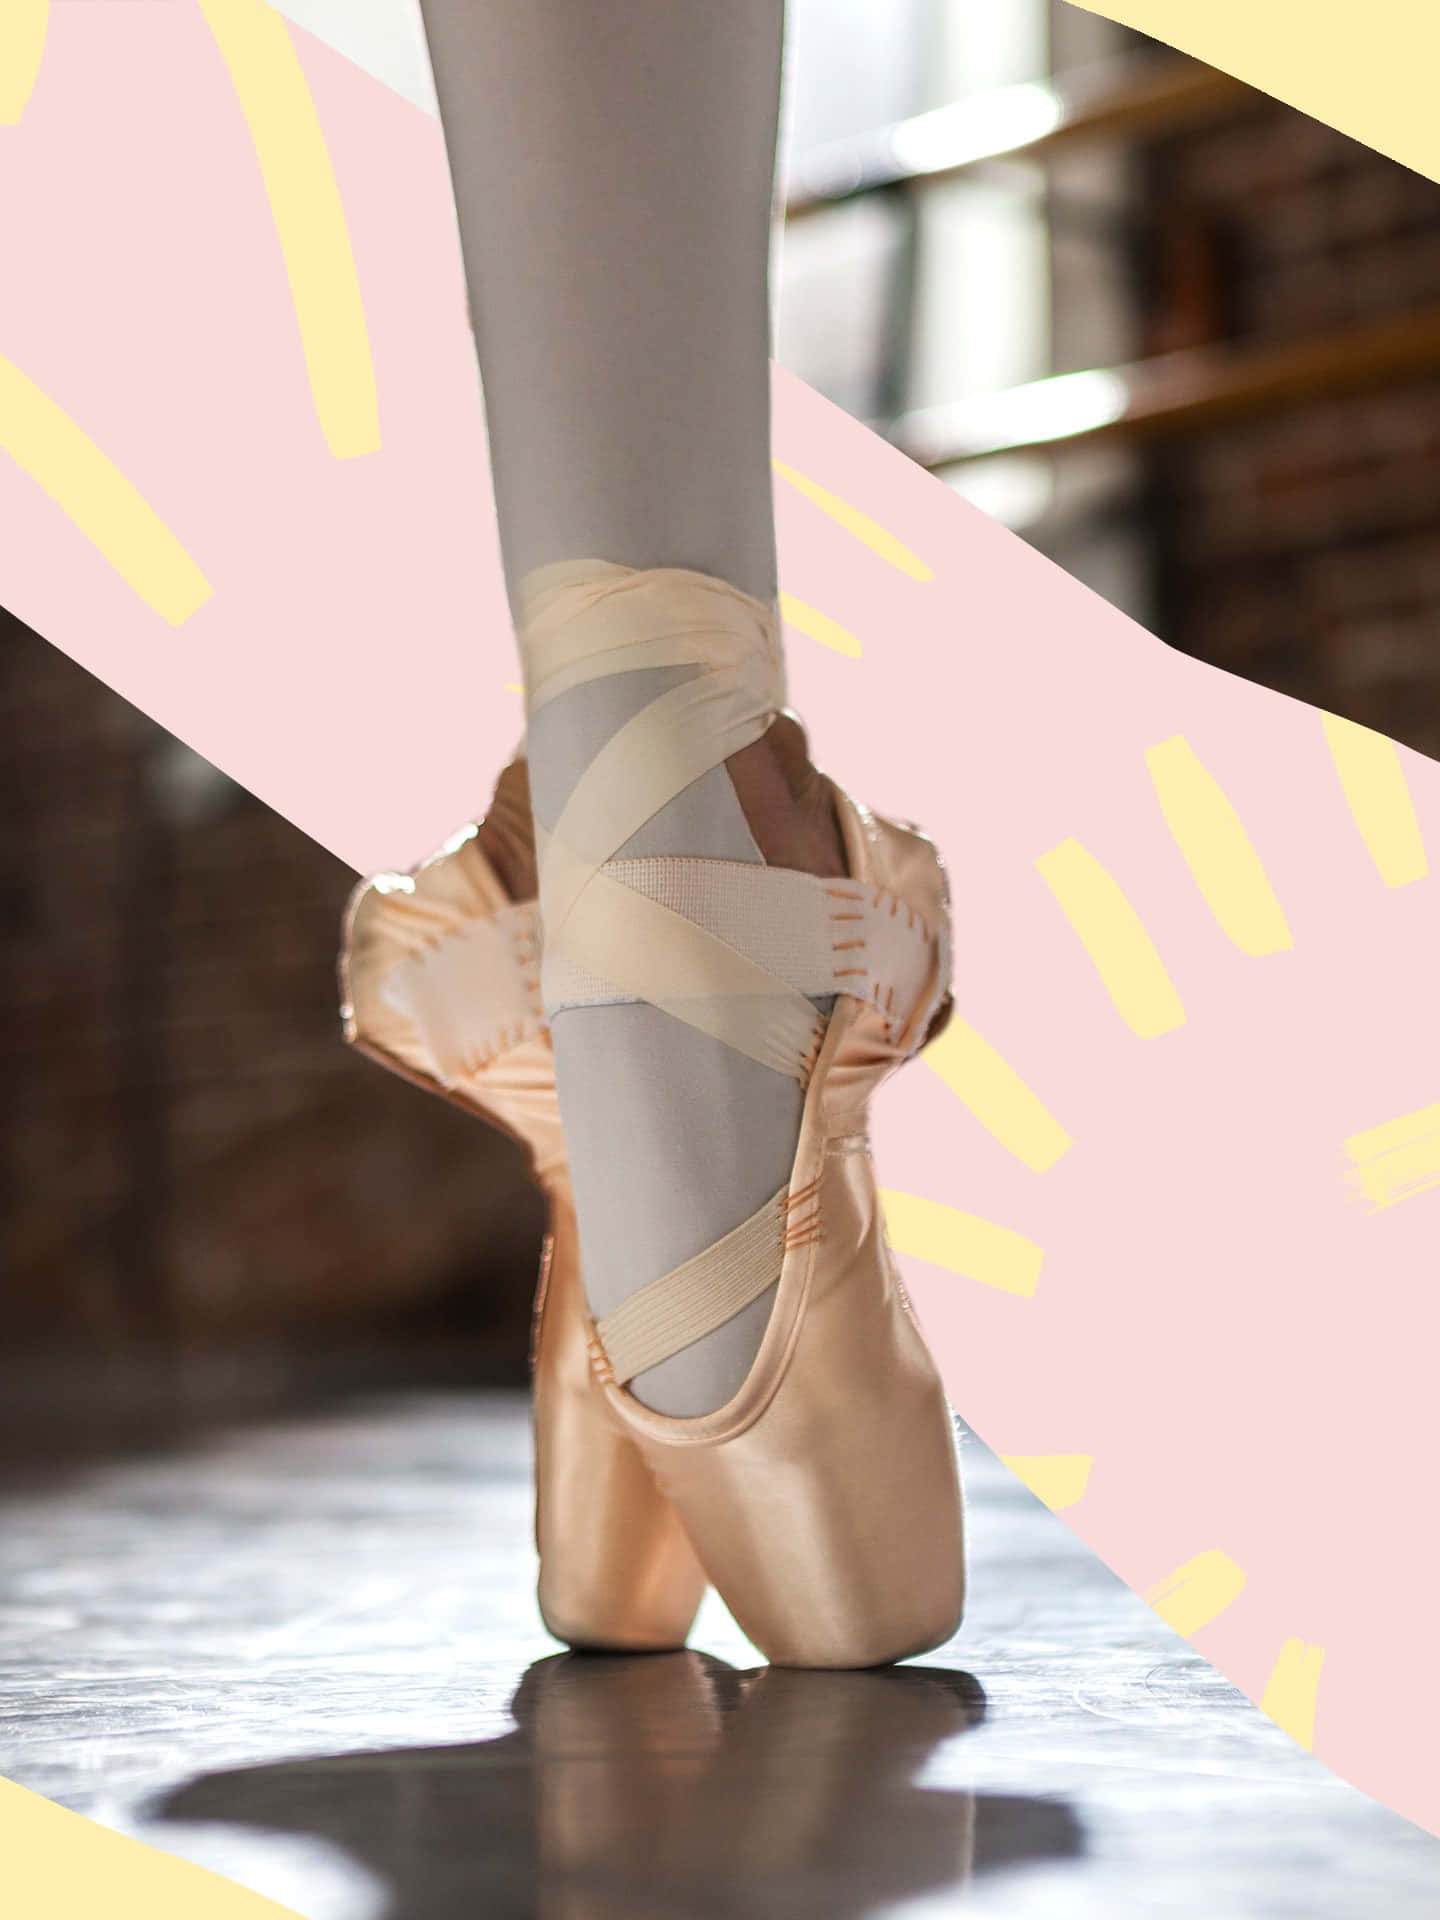 Ballettschuhemit Rosa Bändern An Den Füßen Wallpaper